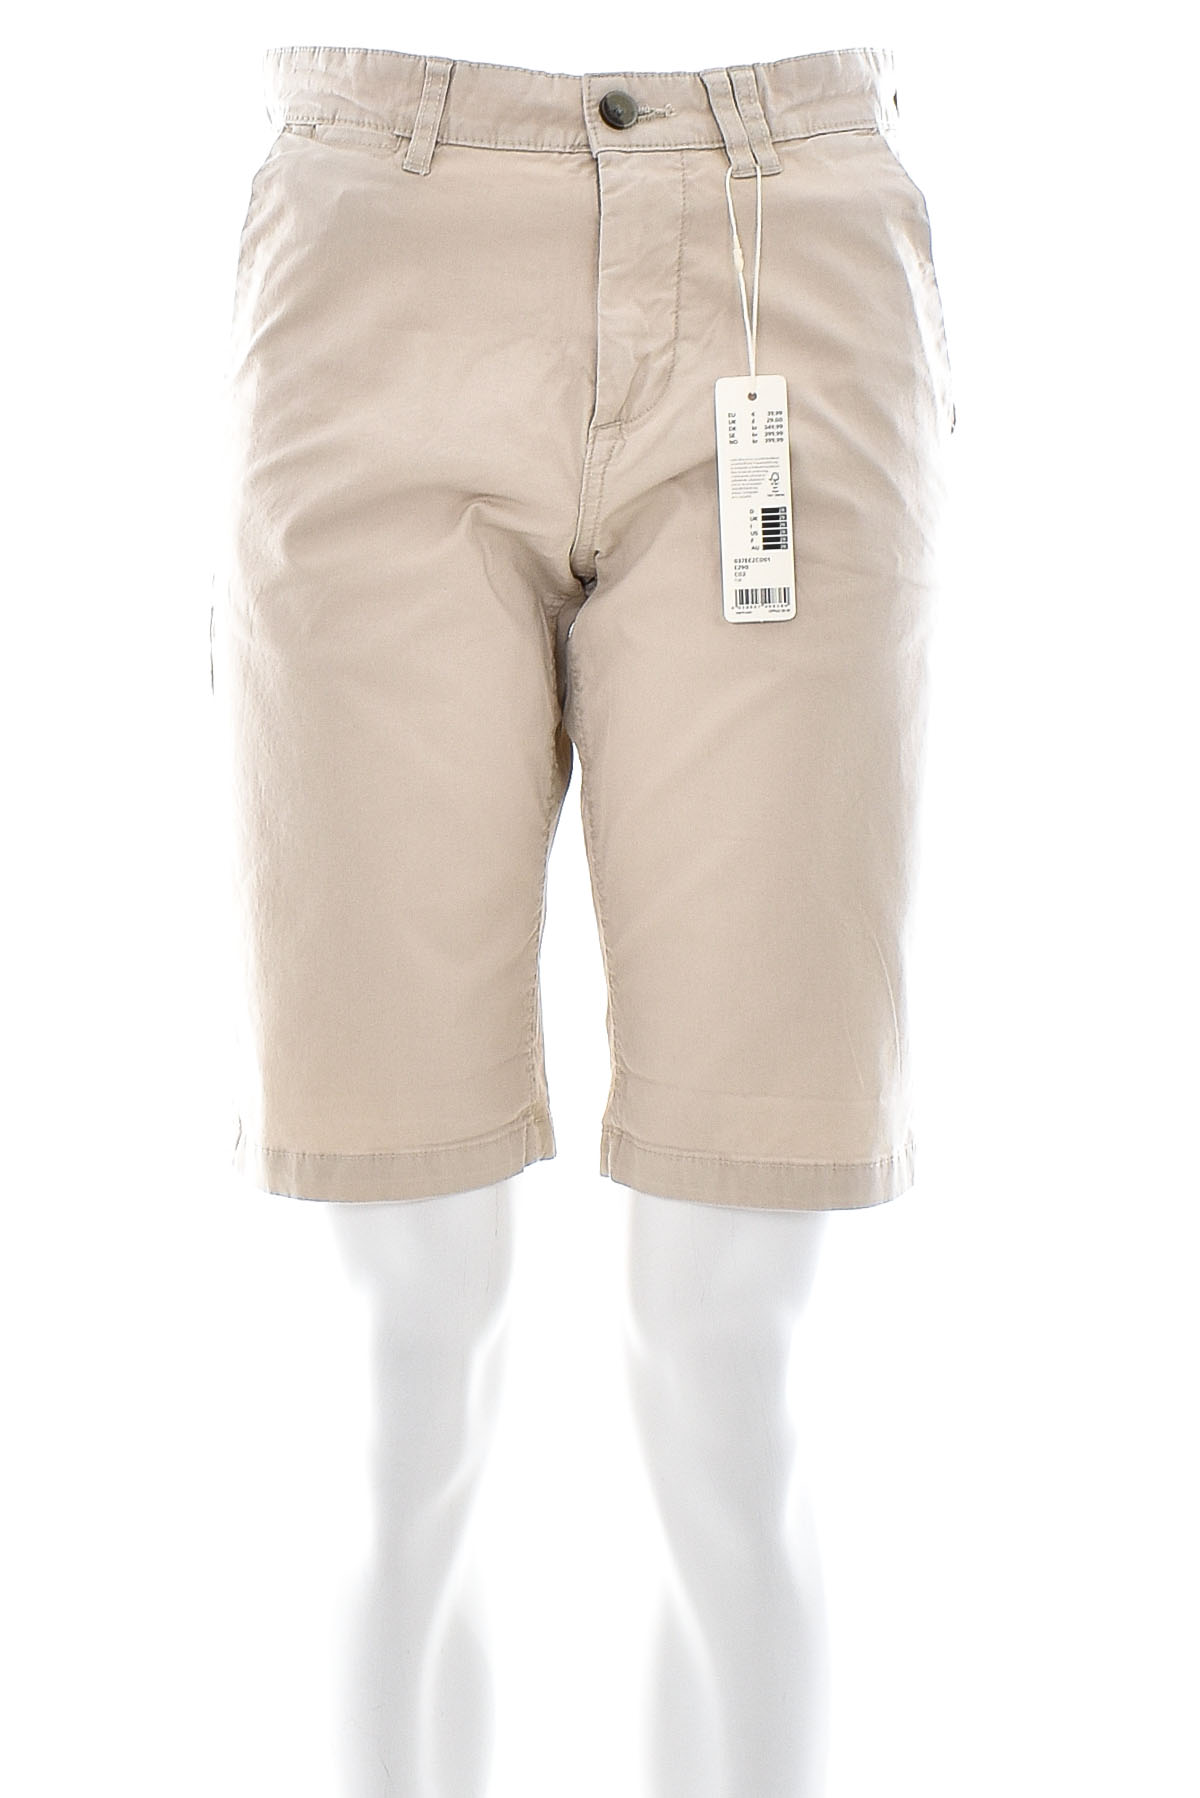 Men's shorts - ESPRIT - 0